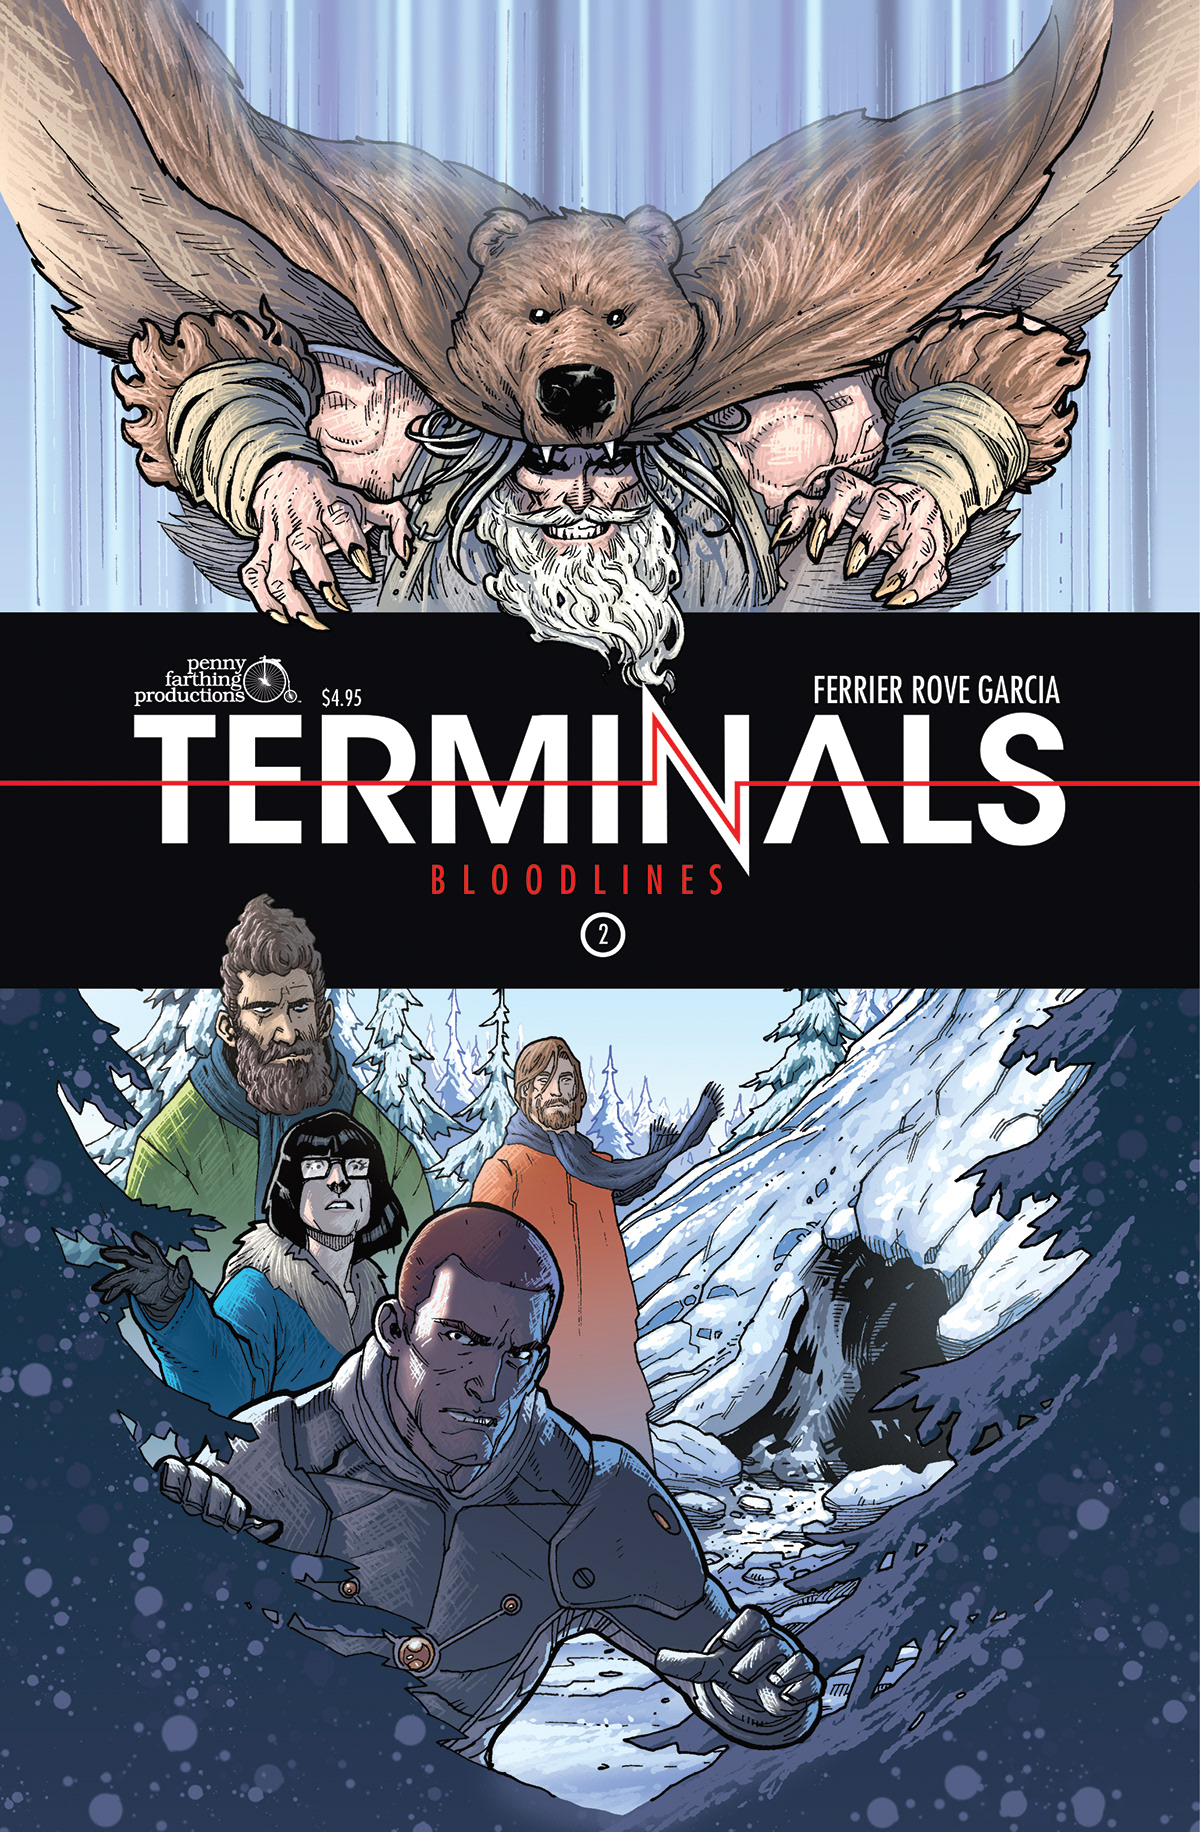 graphic novels comics Terminals design typology super heroes art books